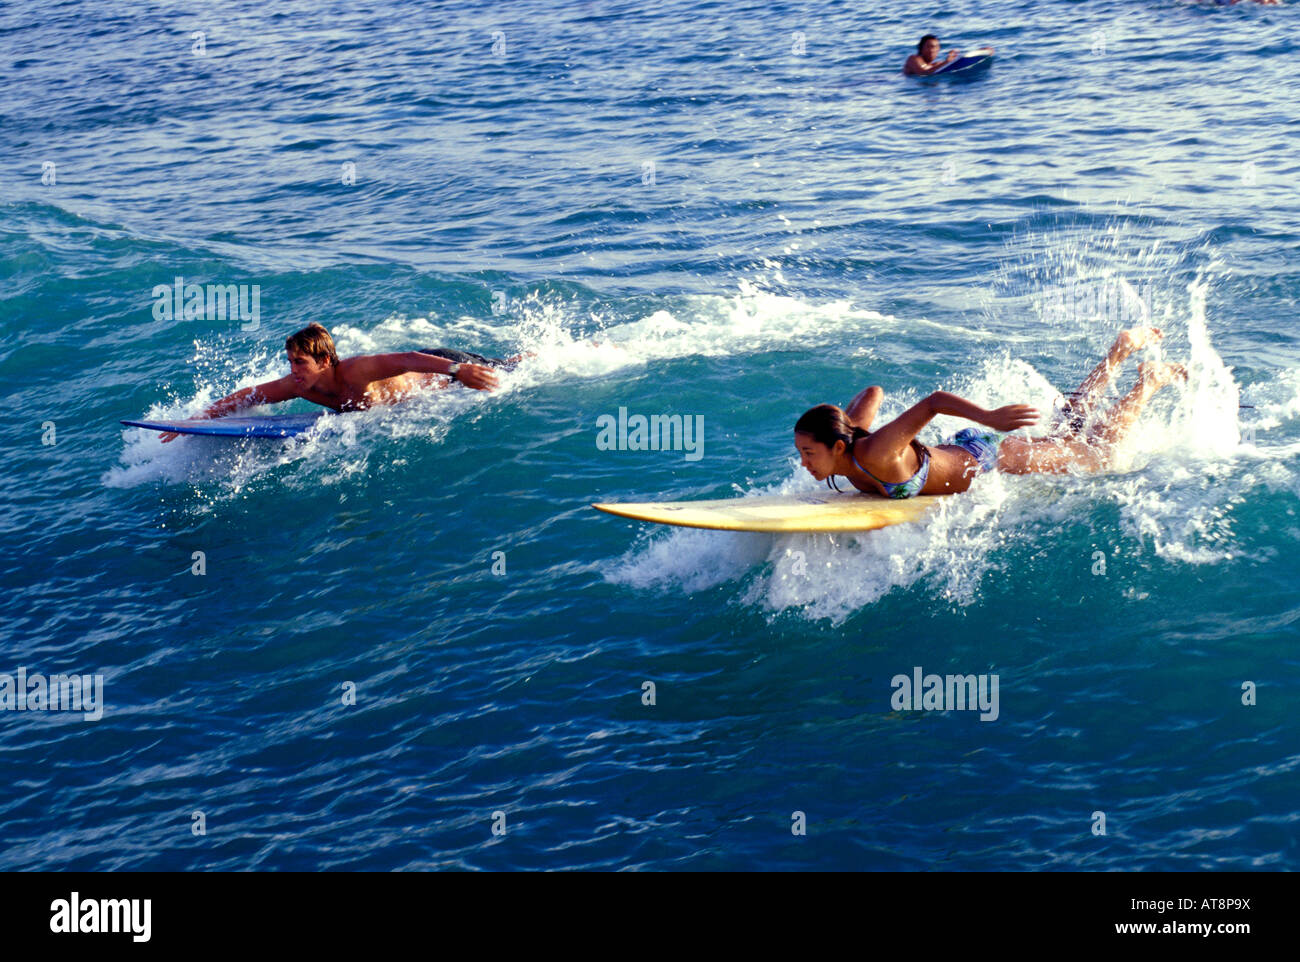 Zwei Teen Surfer paddeln munter in den klaren, blauen Ozean bei ihrer Vorbereitung auf eine Welle vor Waikiki Beach zu fangen. Stockfoto